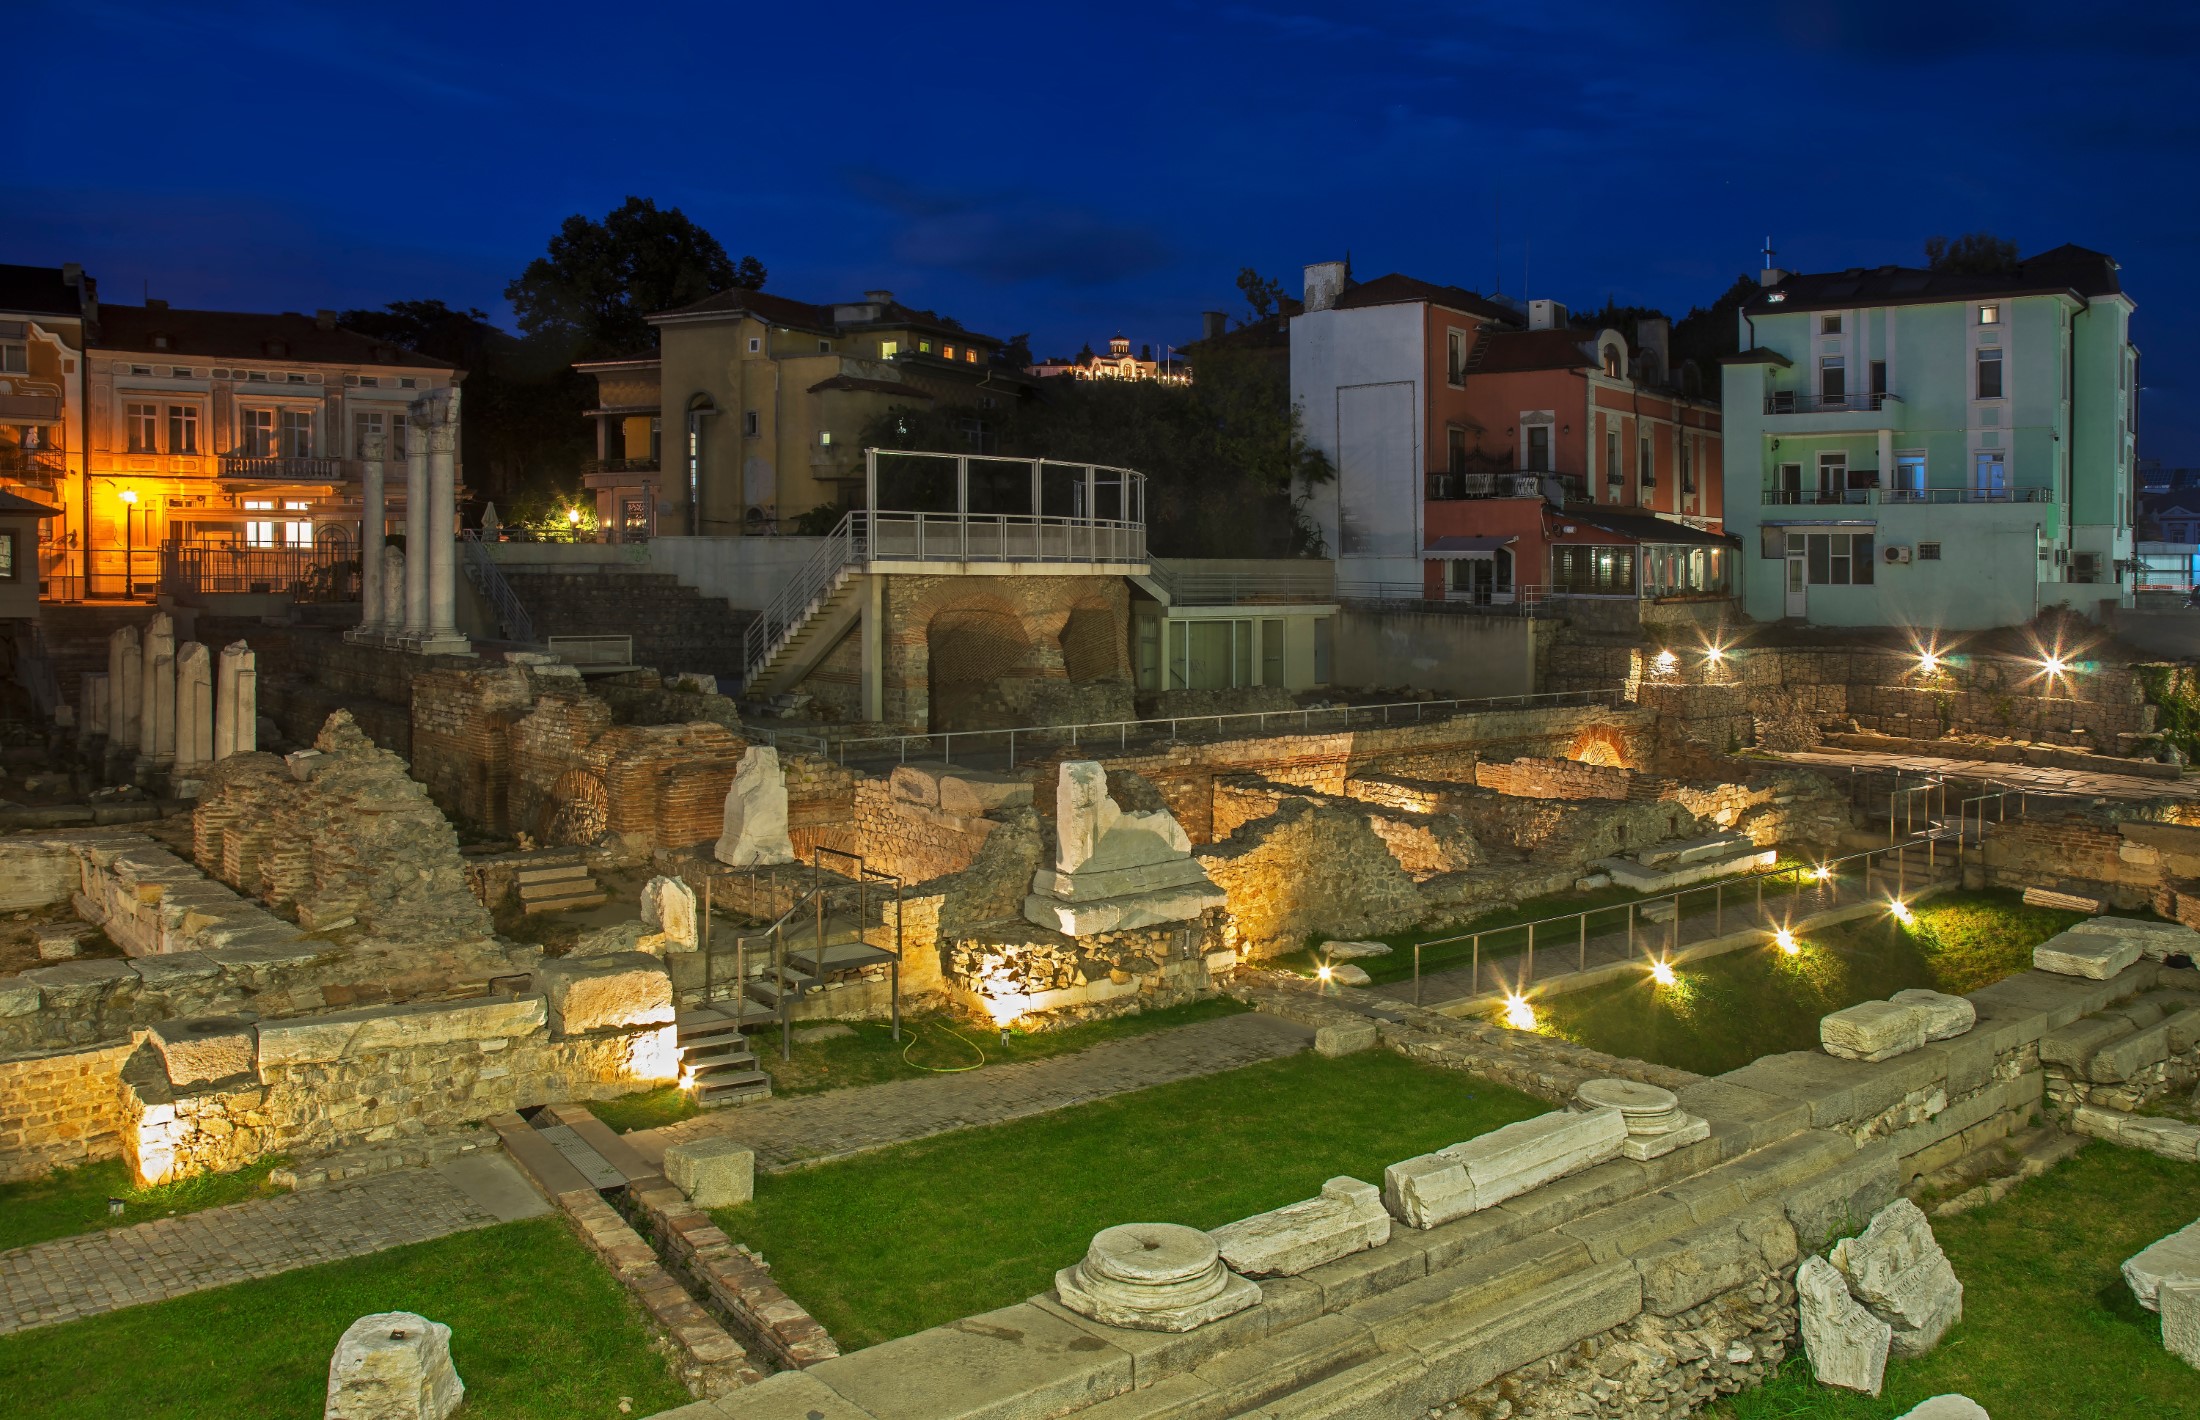 Roman forum of Philippopolis in Plovdiv. Bulgaria